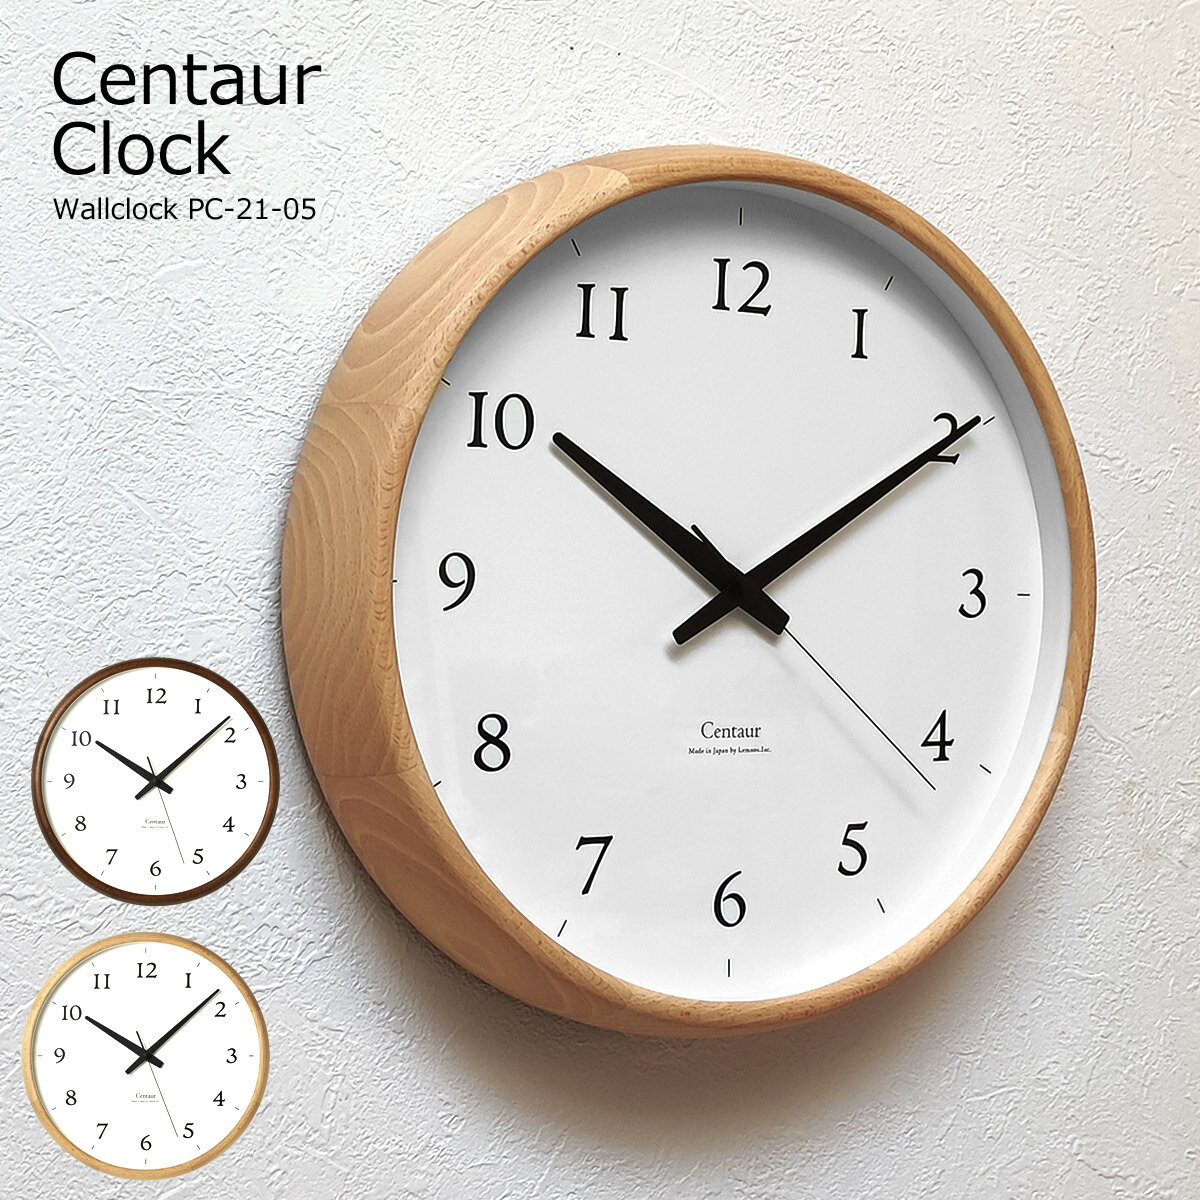 掛け時計 おしゃれ 北欧 時計 壁掛け 木製 壁掛け時計 Centaur Clock セントールクロック シンプル 静か 音がしない 静音 ナチュラル ブラウン スイープムーブメント オシャレ リビング キッチン 寝室 PC21-05 タカタレムノス lemnos